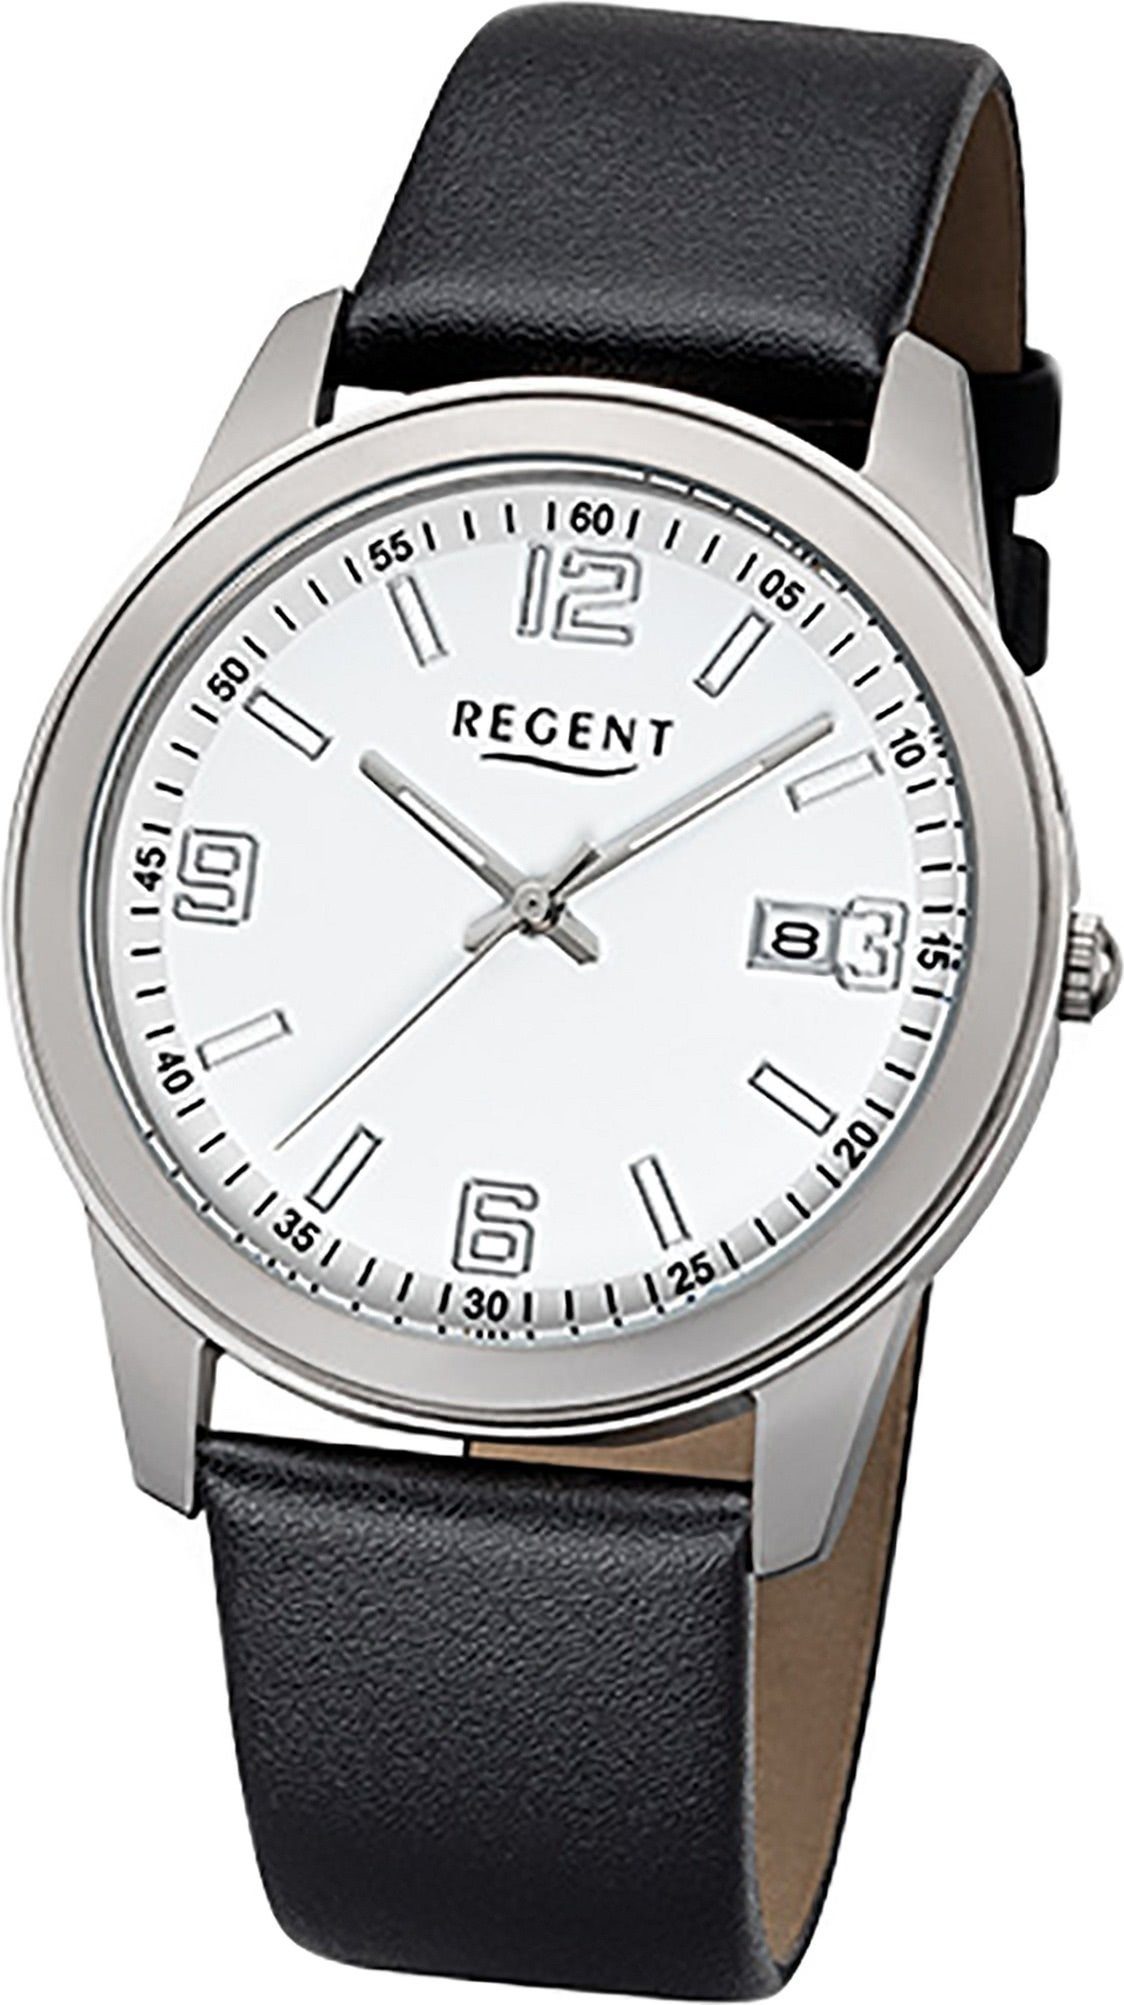 Regent Quarzuhr Regent Leder Herren Uhr F-1105 Quarzuhr, Herrenuhr Lederarmband schwarz, rundes Gehäuse, mittel (ca. 38mm)